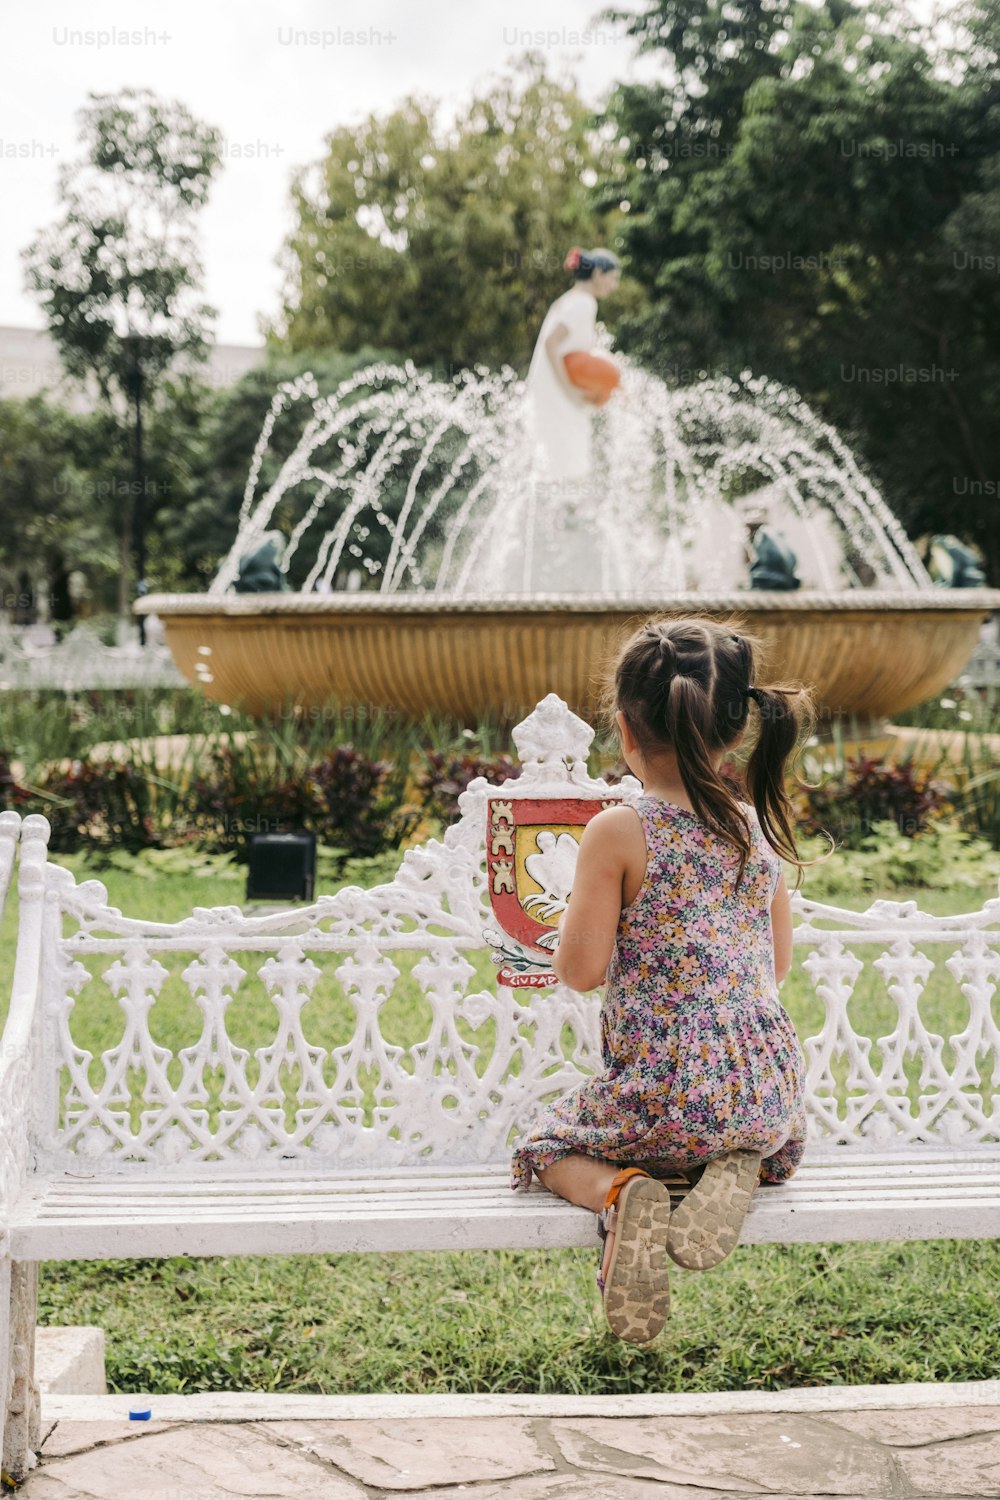 Una niña sentada en un banco frente a una fuente